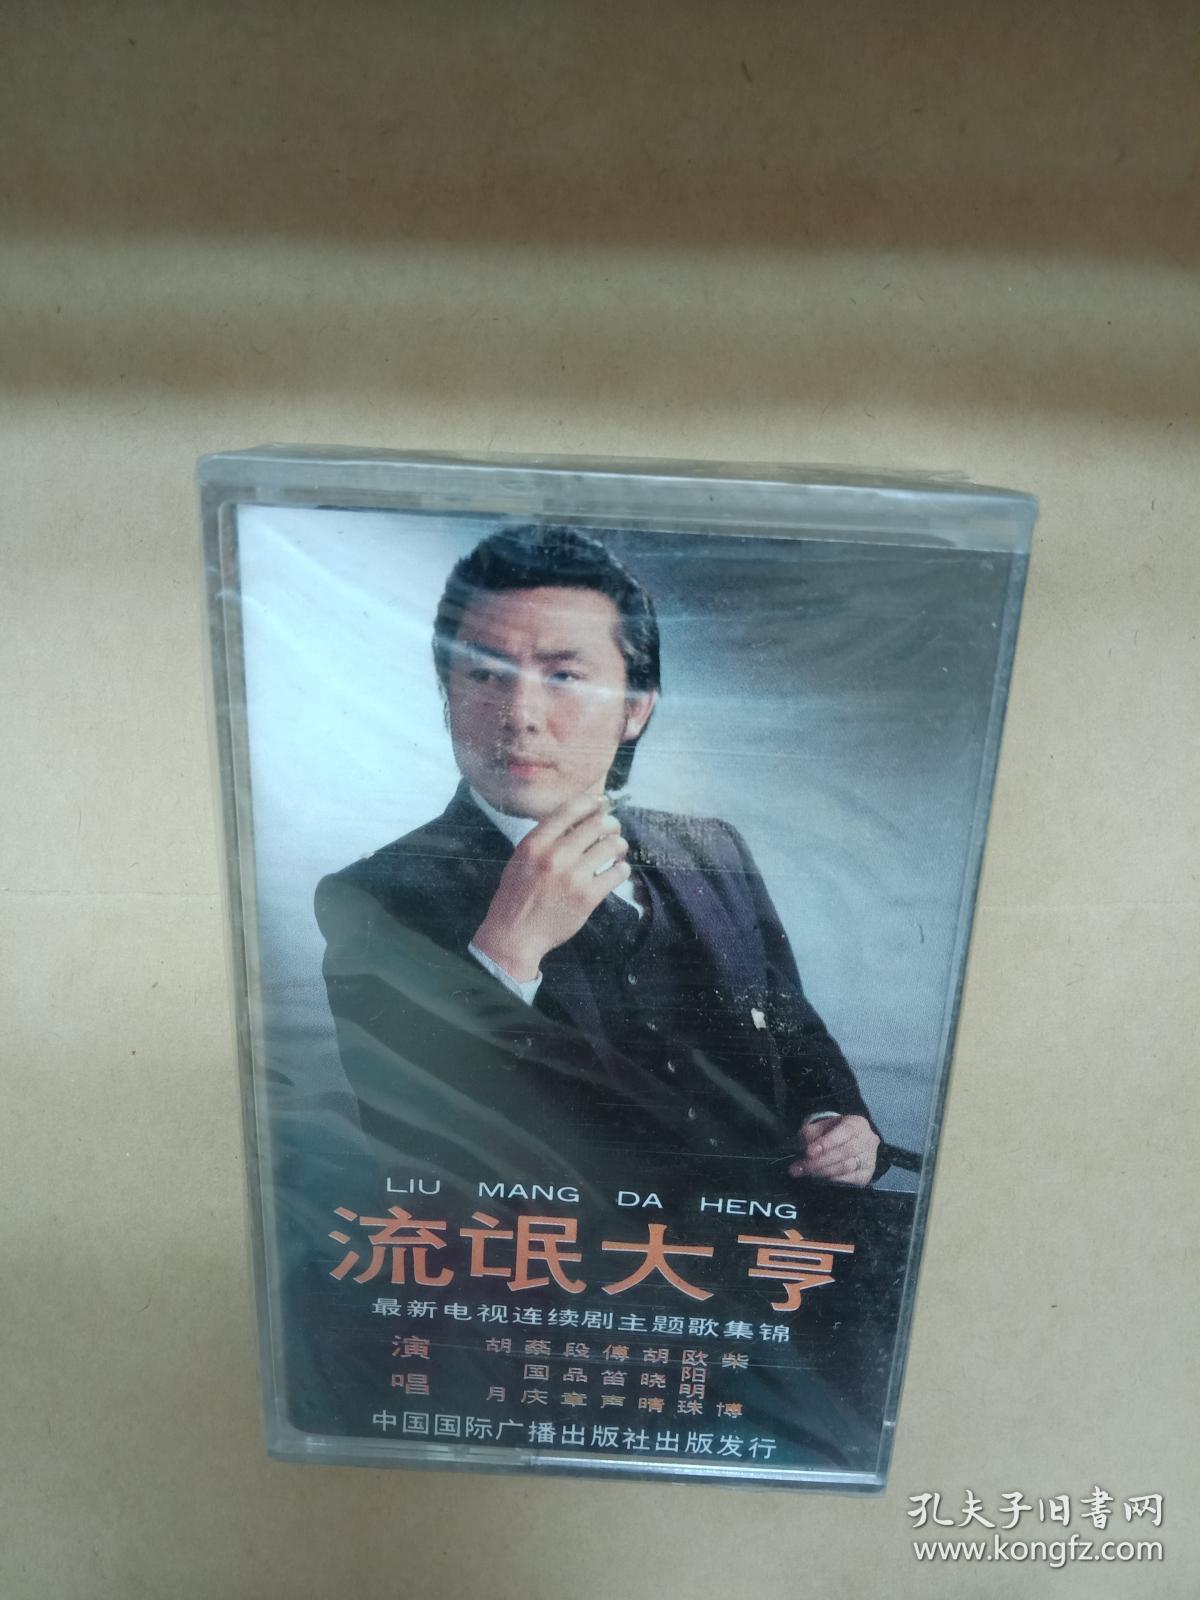 磁带:流氓大亨最新电视连续剧主题歌集锦(歌名